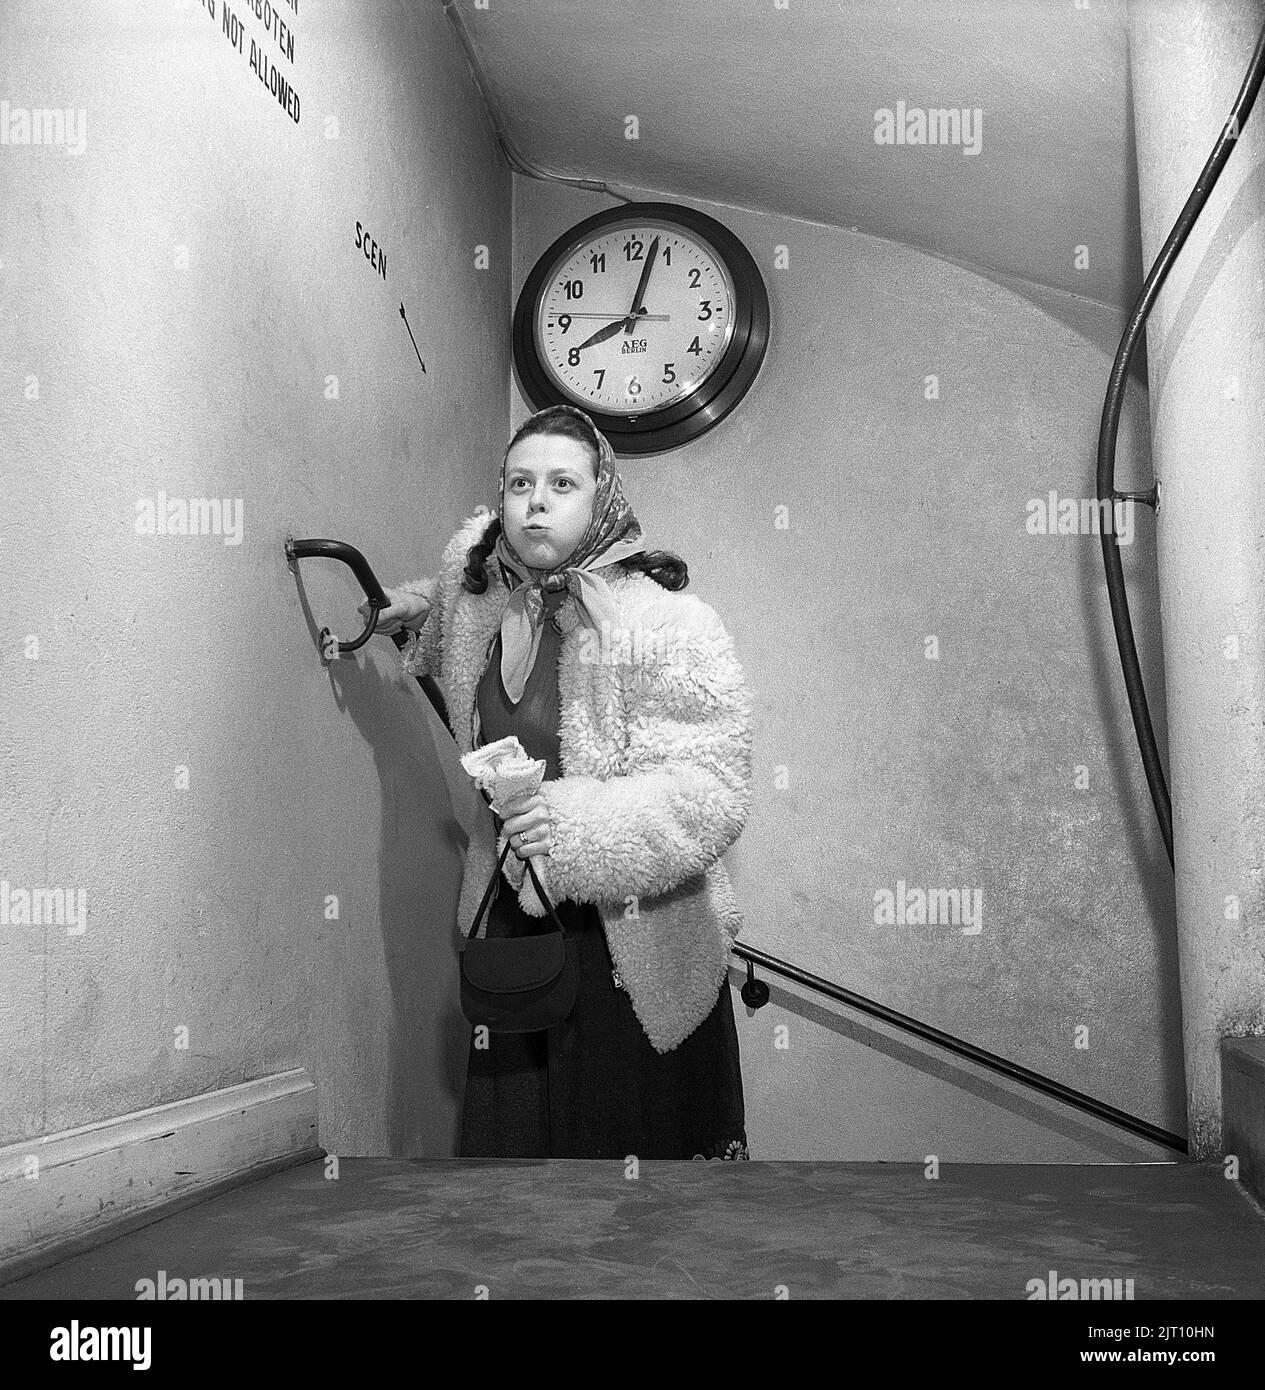 In der 1950s. Eine Frau ist sichtbar erschöpft, wenn sie die Treppe hinauf läuft, vielleicht ist sie ein paar Minuten zu spät für ihren Termin um acht Uhr, da die Uhr an der Wand zeigt, dass es ein paar Minuten vorbei ist. Schweden 1950 Kristoffersson Ref. AX7-1 Stockfoto